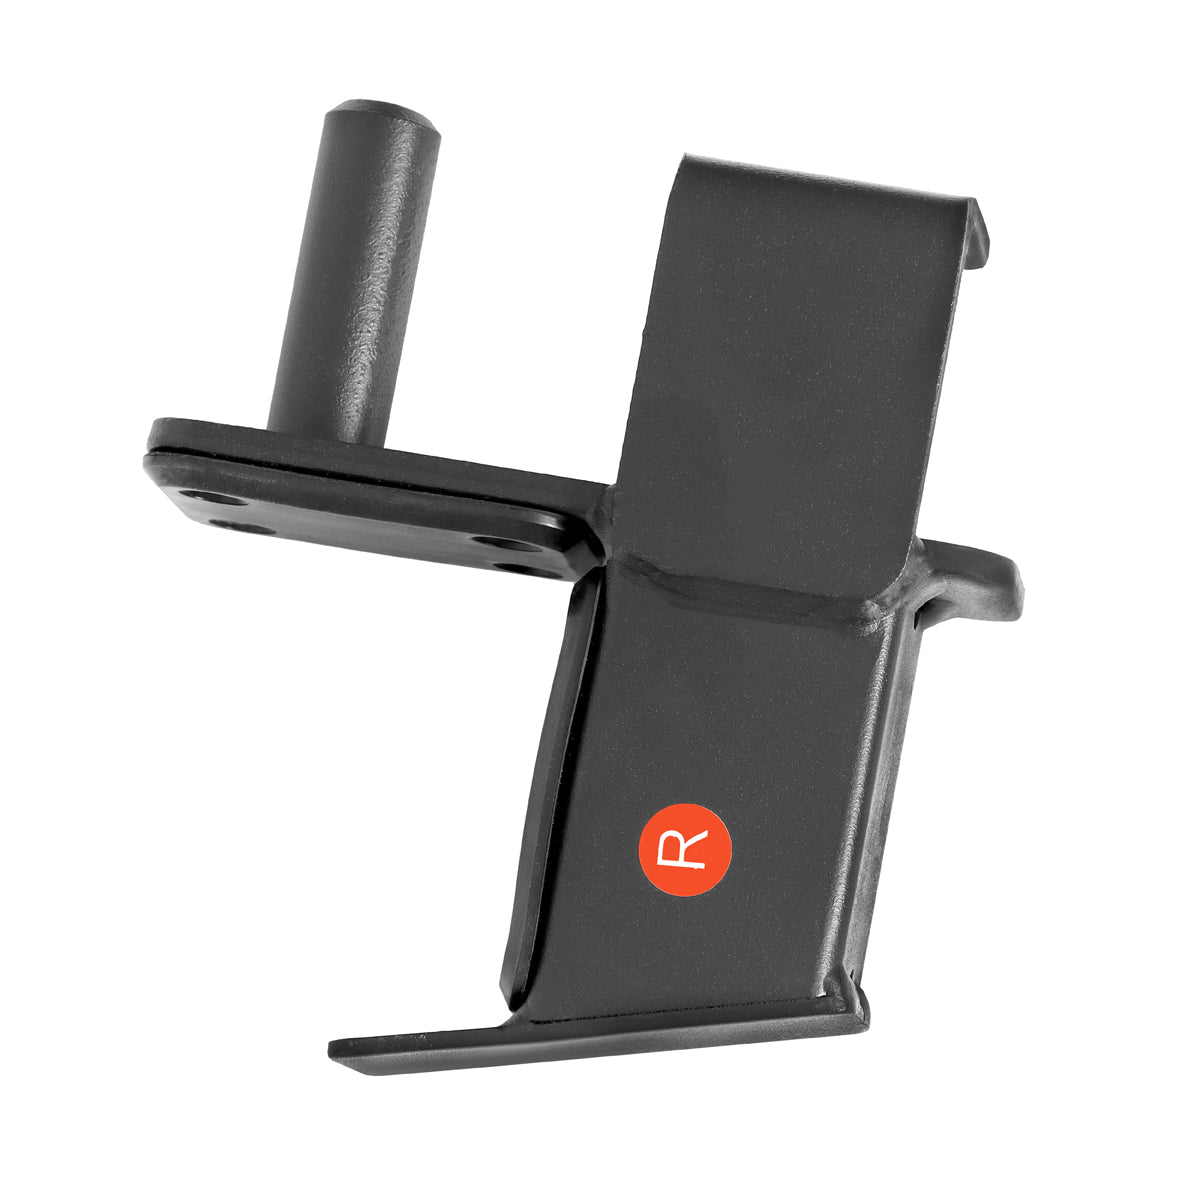 CORE Roller J Hooks – Bench Fitness Equipment